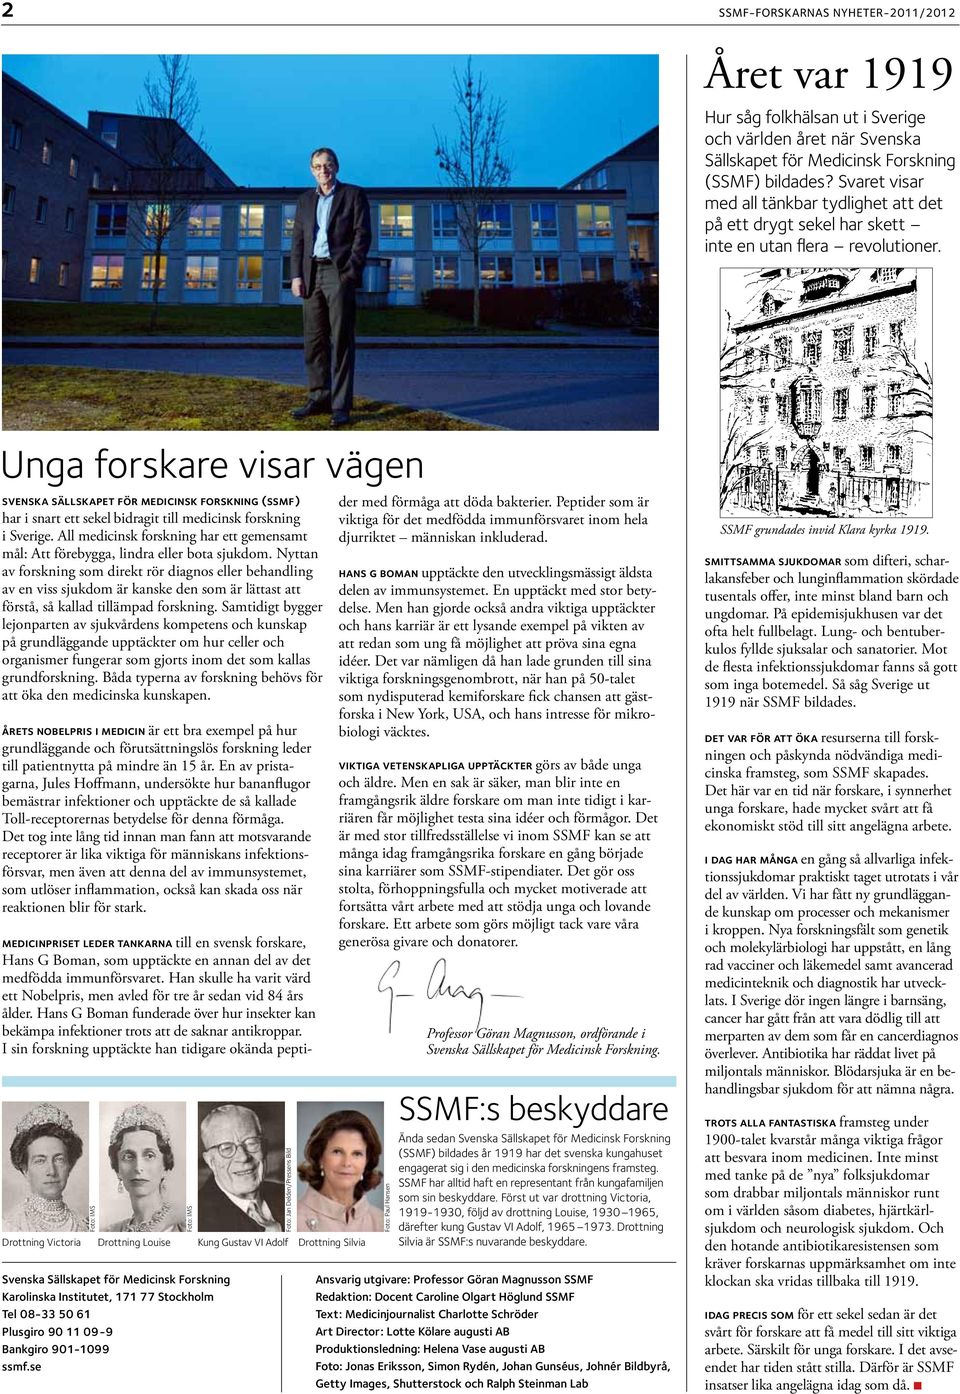 Unga forsare visar vägen svensa sällsapet för medicins forsning (ssmf) har i snart ett seel bidragit till medicins forsning i Sverige.